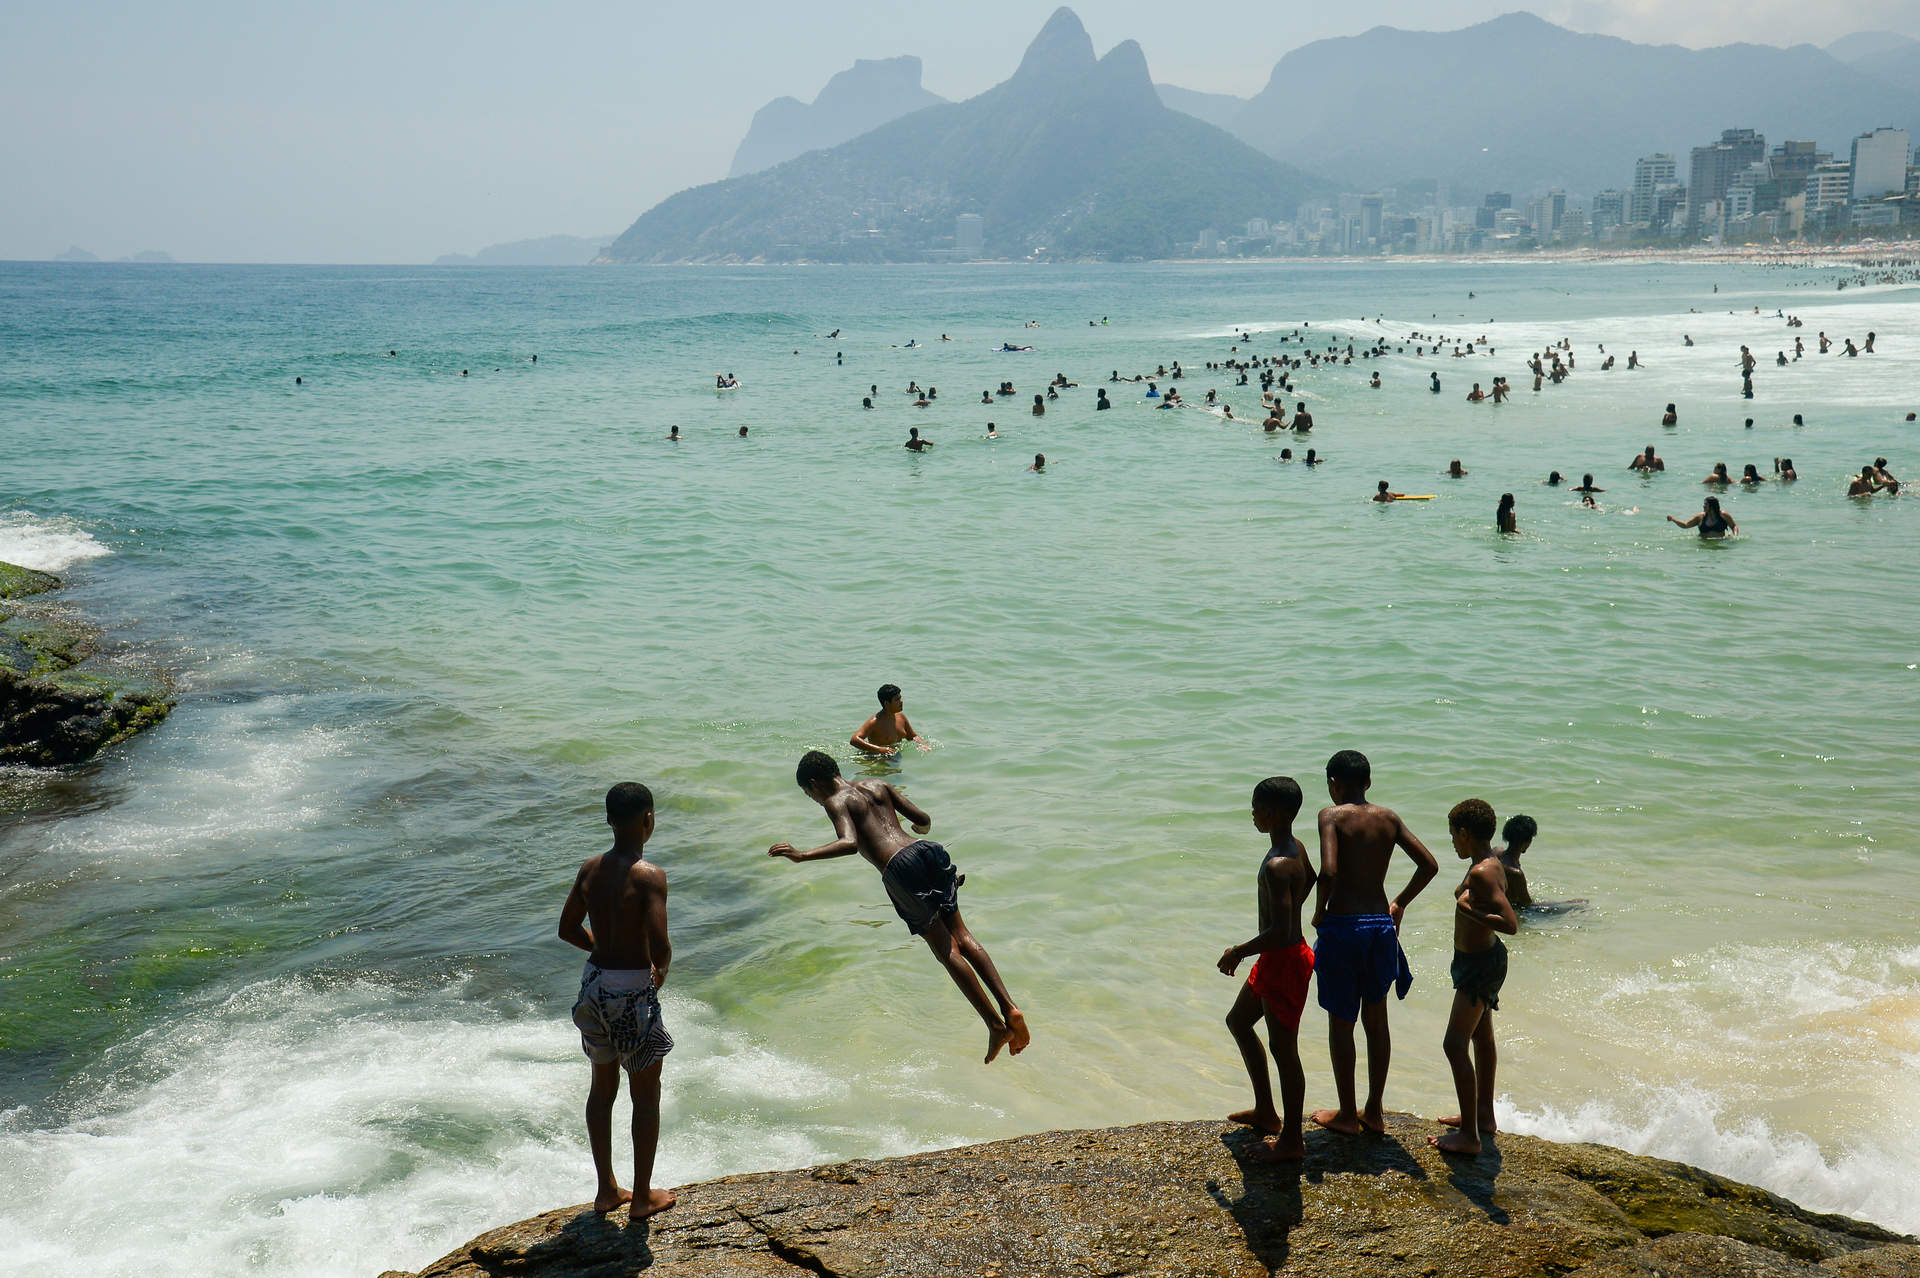 El Gobierno de Brasil lanza un programa turístico para ampliar la conectividad aérea internacional